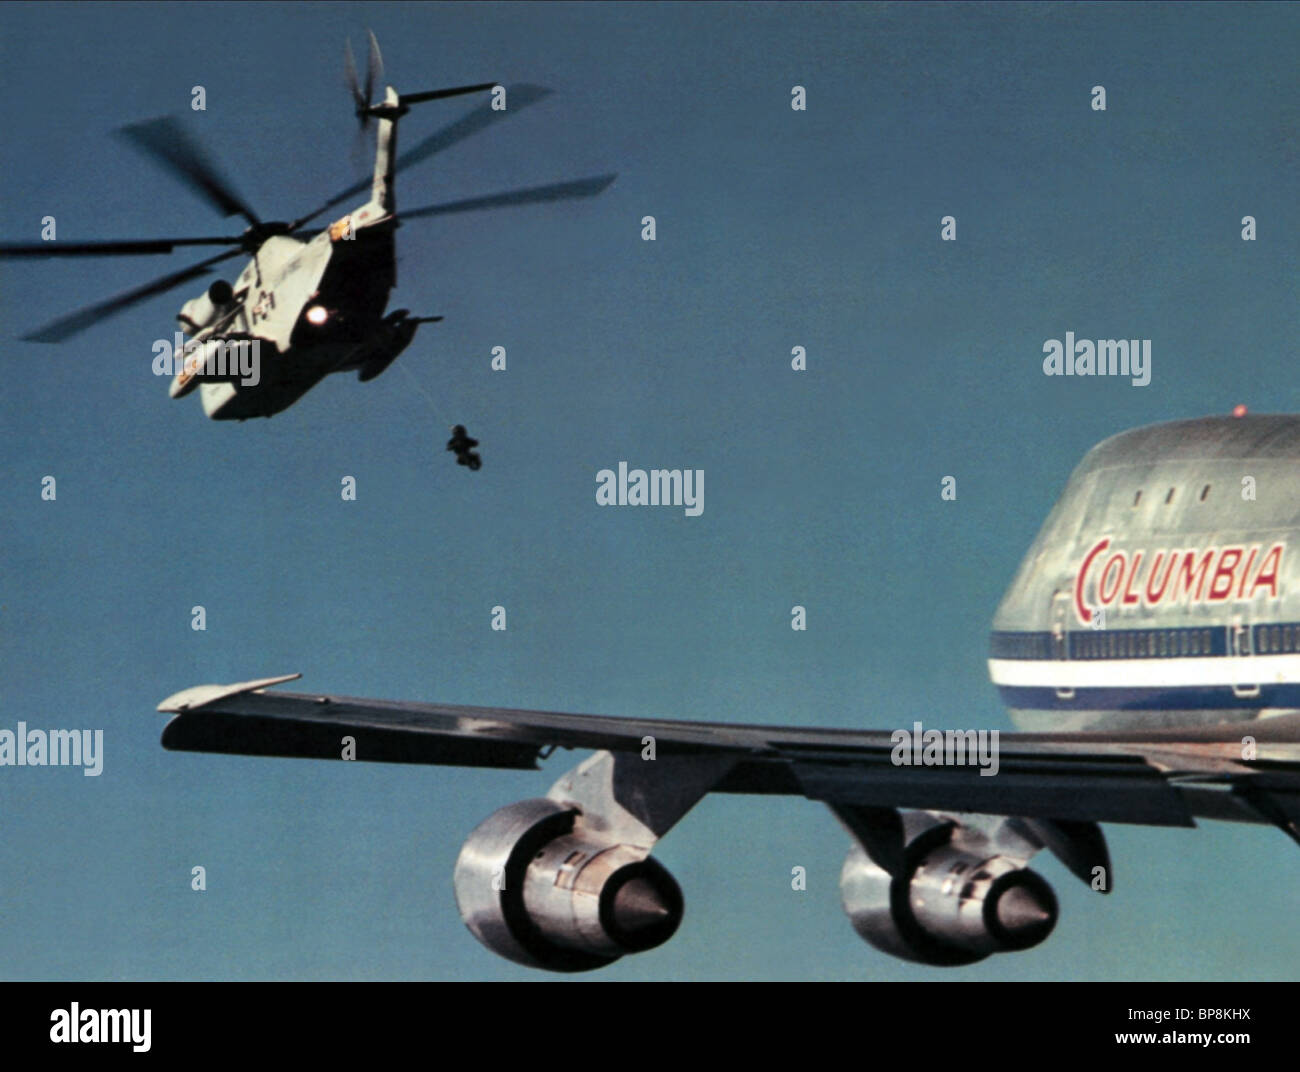 seaking-helicopter-columbia-747-jumbo-jet-airport-1975-1974-BP8KHX.jpg